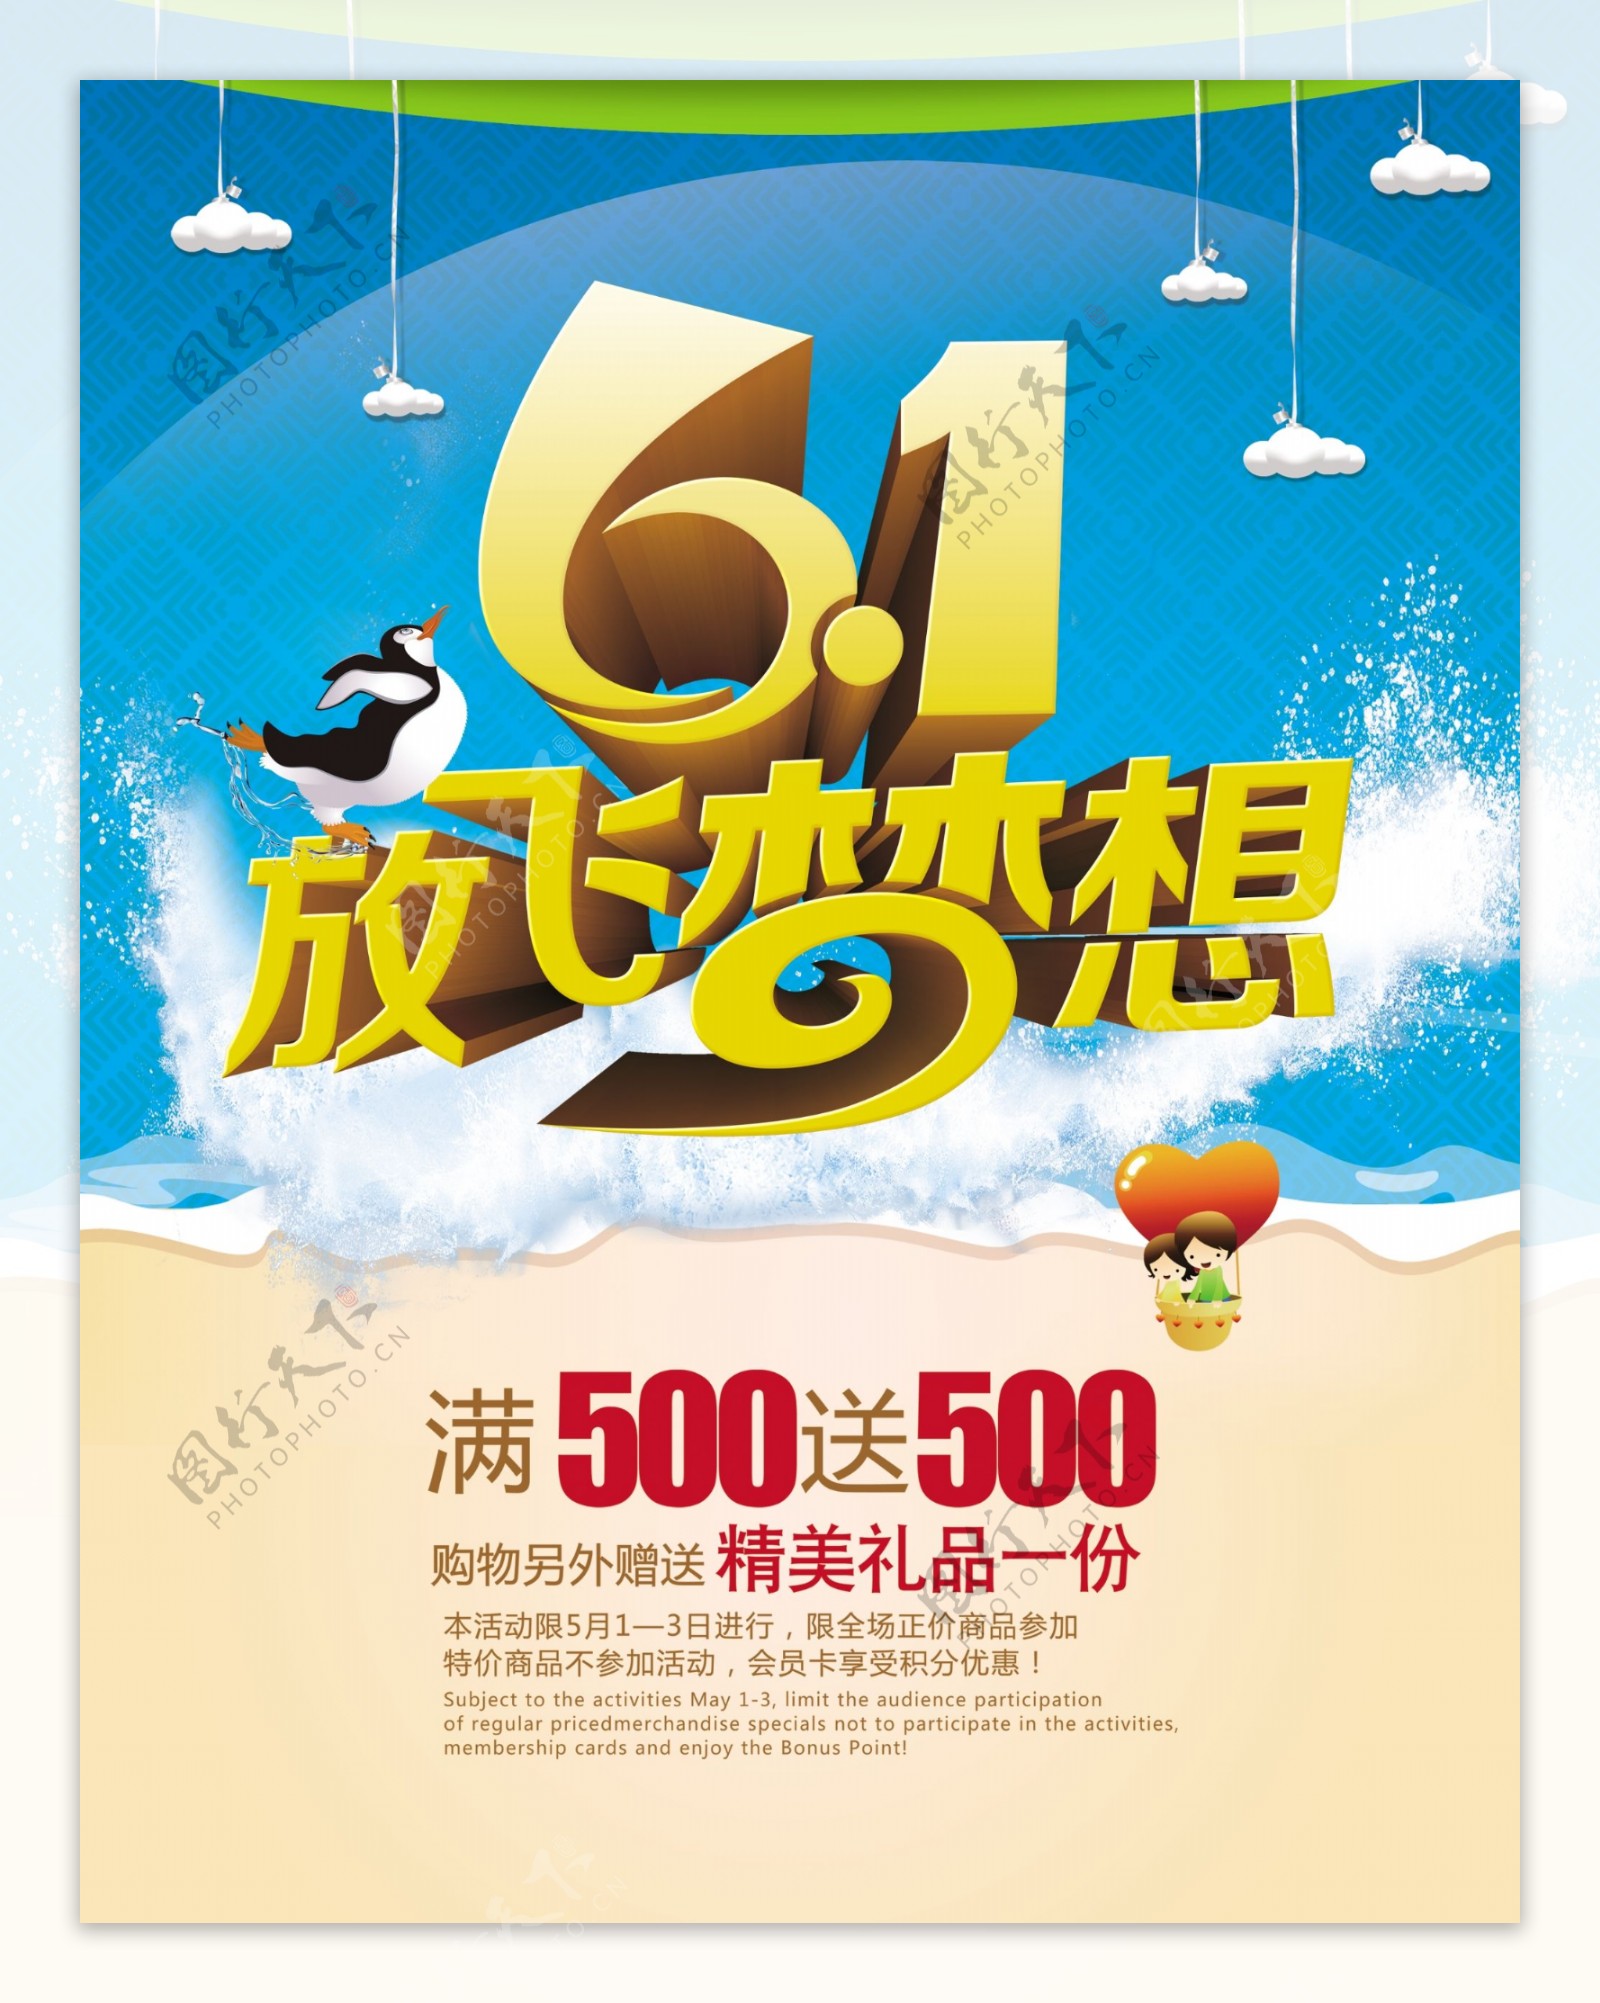 61儿童节放飞梦想促销海报PSD素材